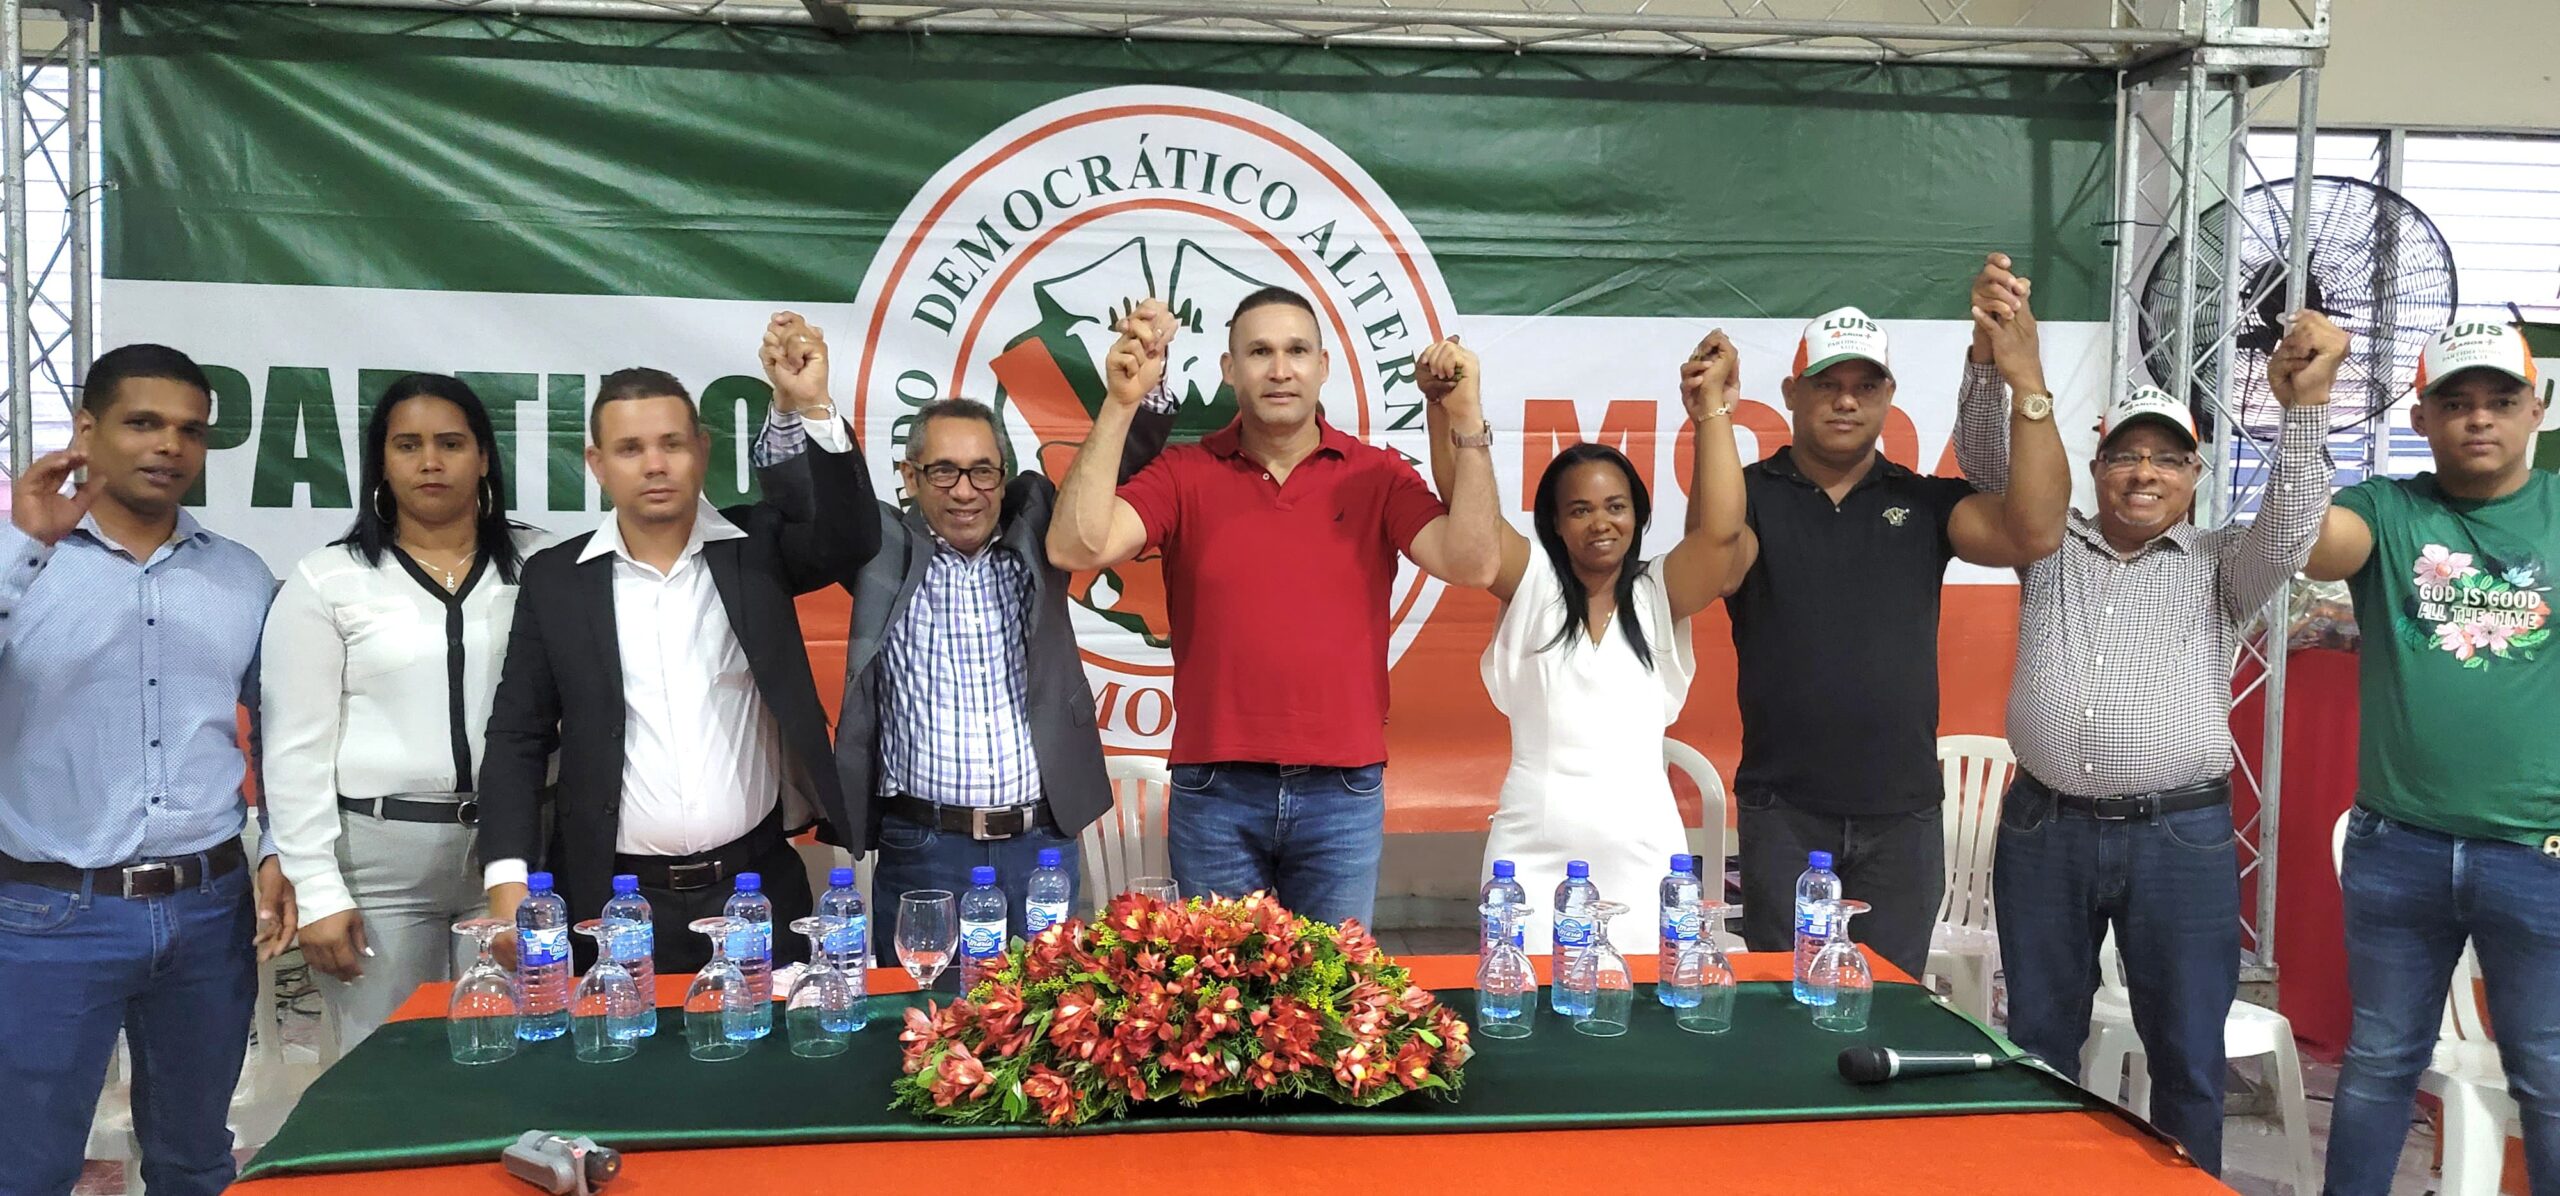 Partido MODA realiza grandes movilizaciones en respaldo de sus candidatos y del presidente Abinader